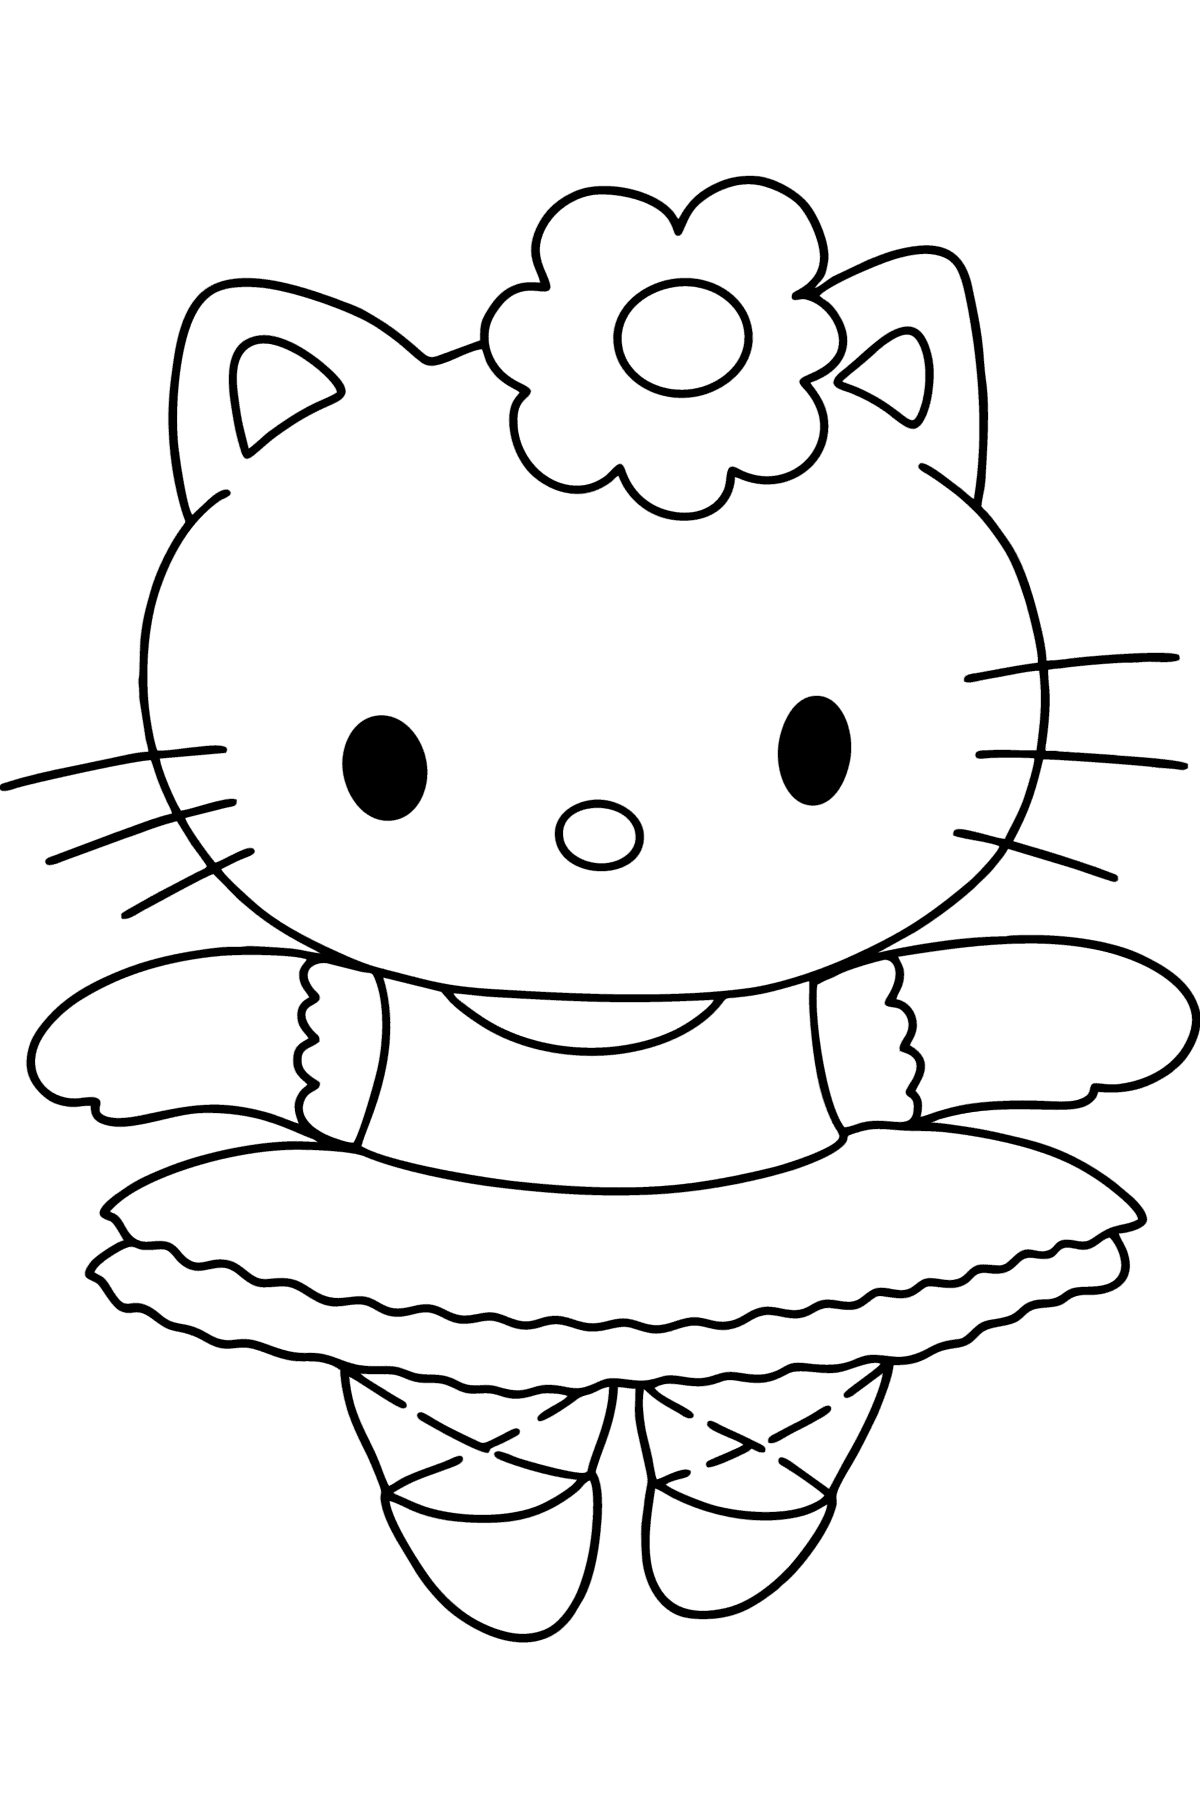 Dibujo de Hello Kitty Bailarina para colorear - Dibujos para Colorear para Niños